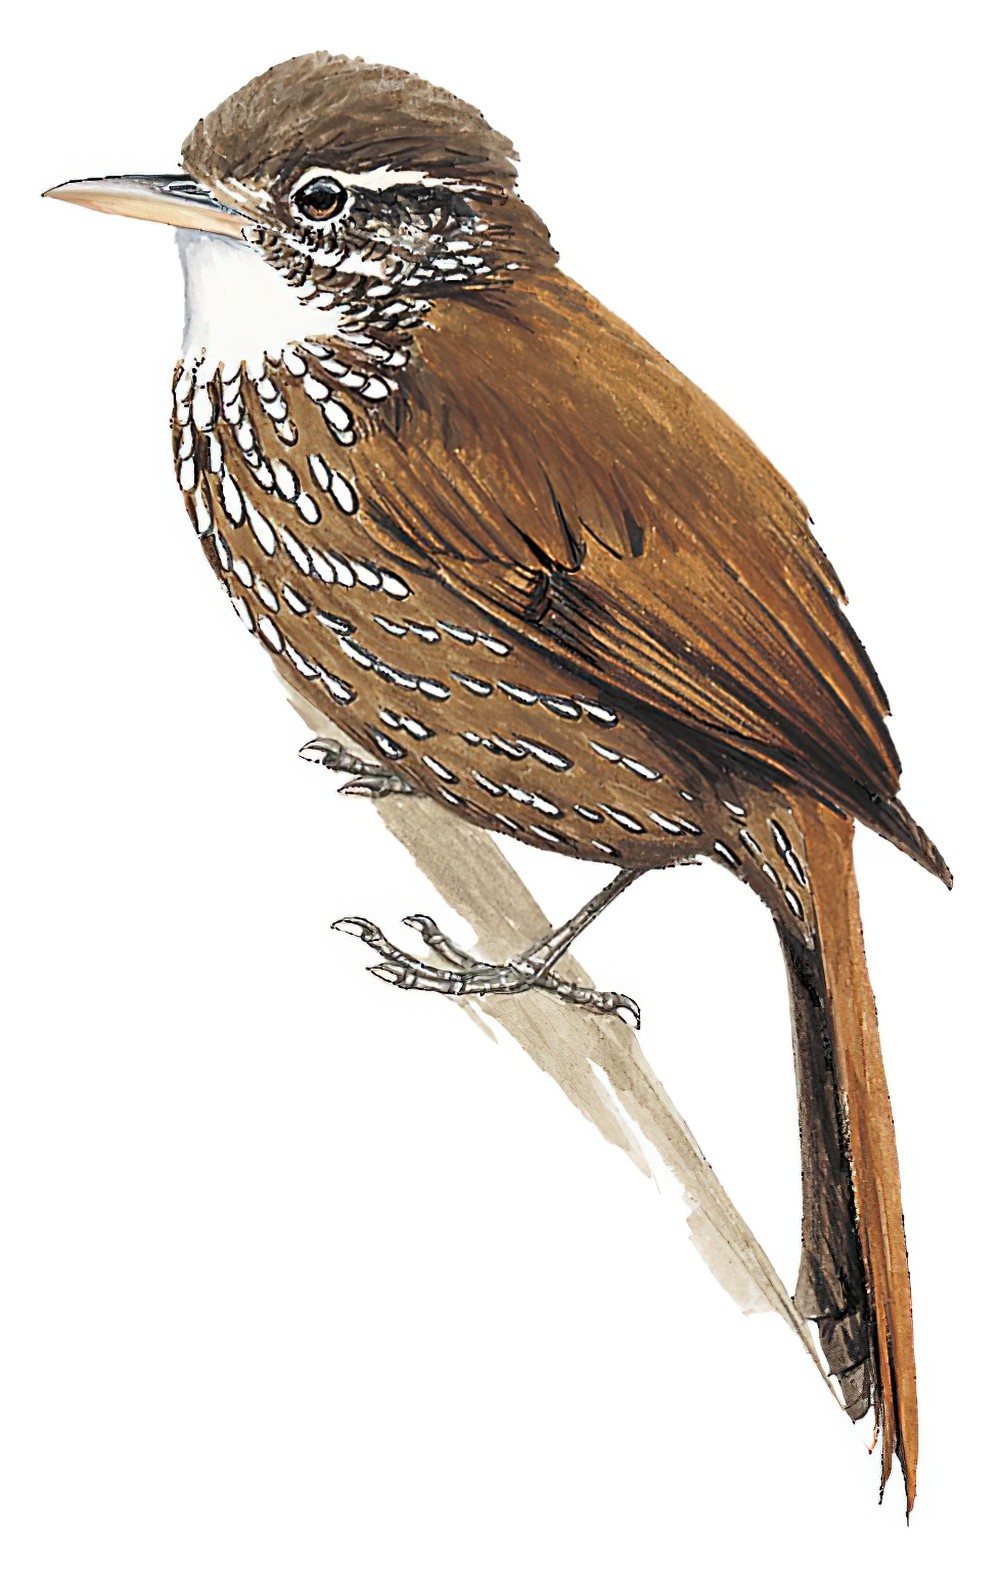 华丽爬树雀 / Beautiful Treerunner / Margarornis bellulus